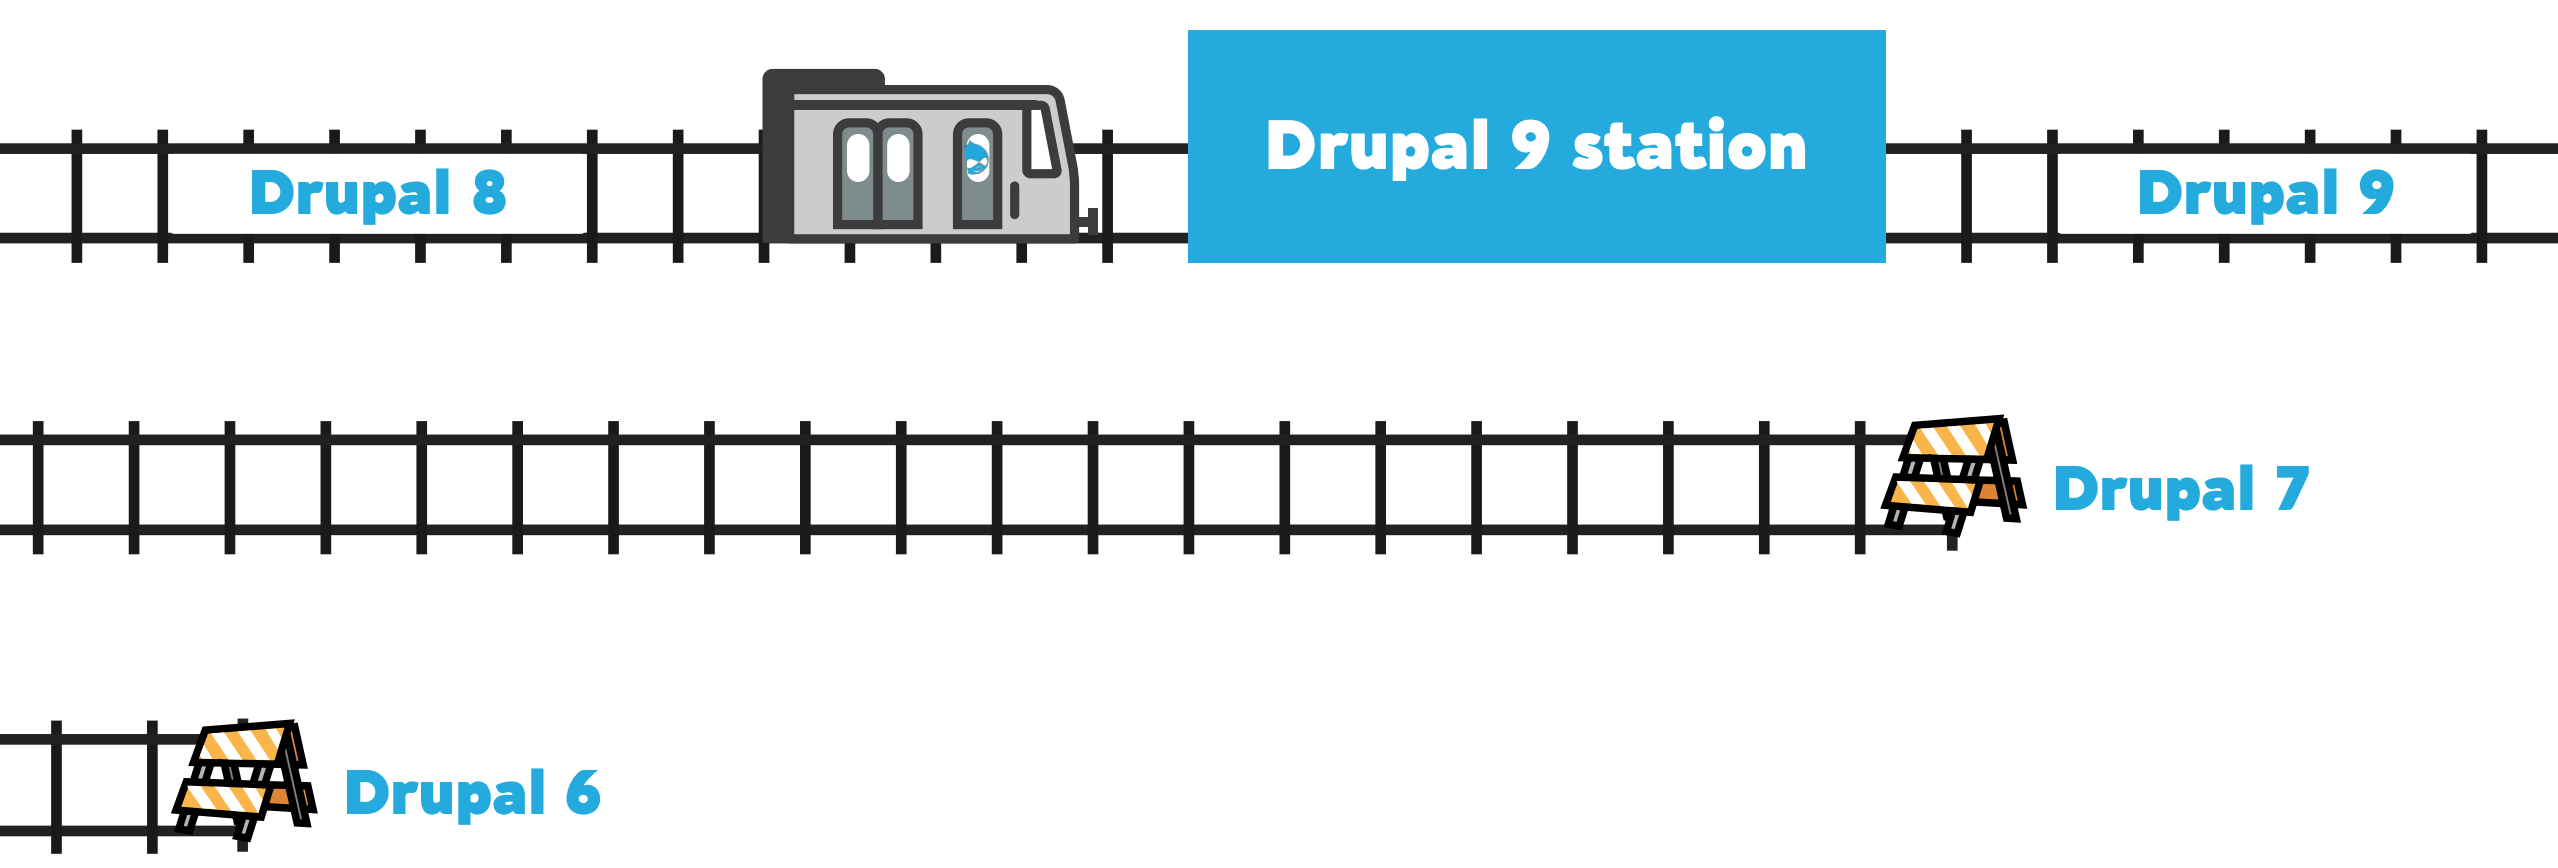 Darstellung mit den unterschiedlichen Drupal-Versionen